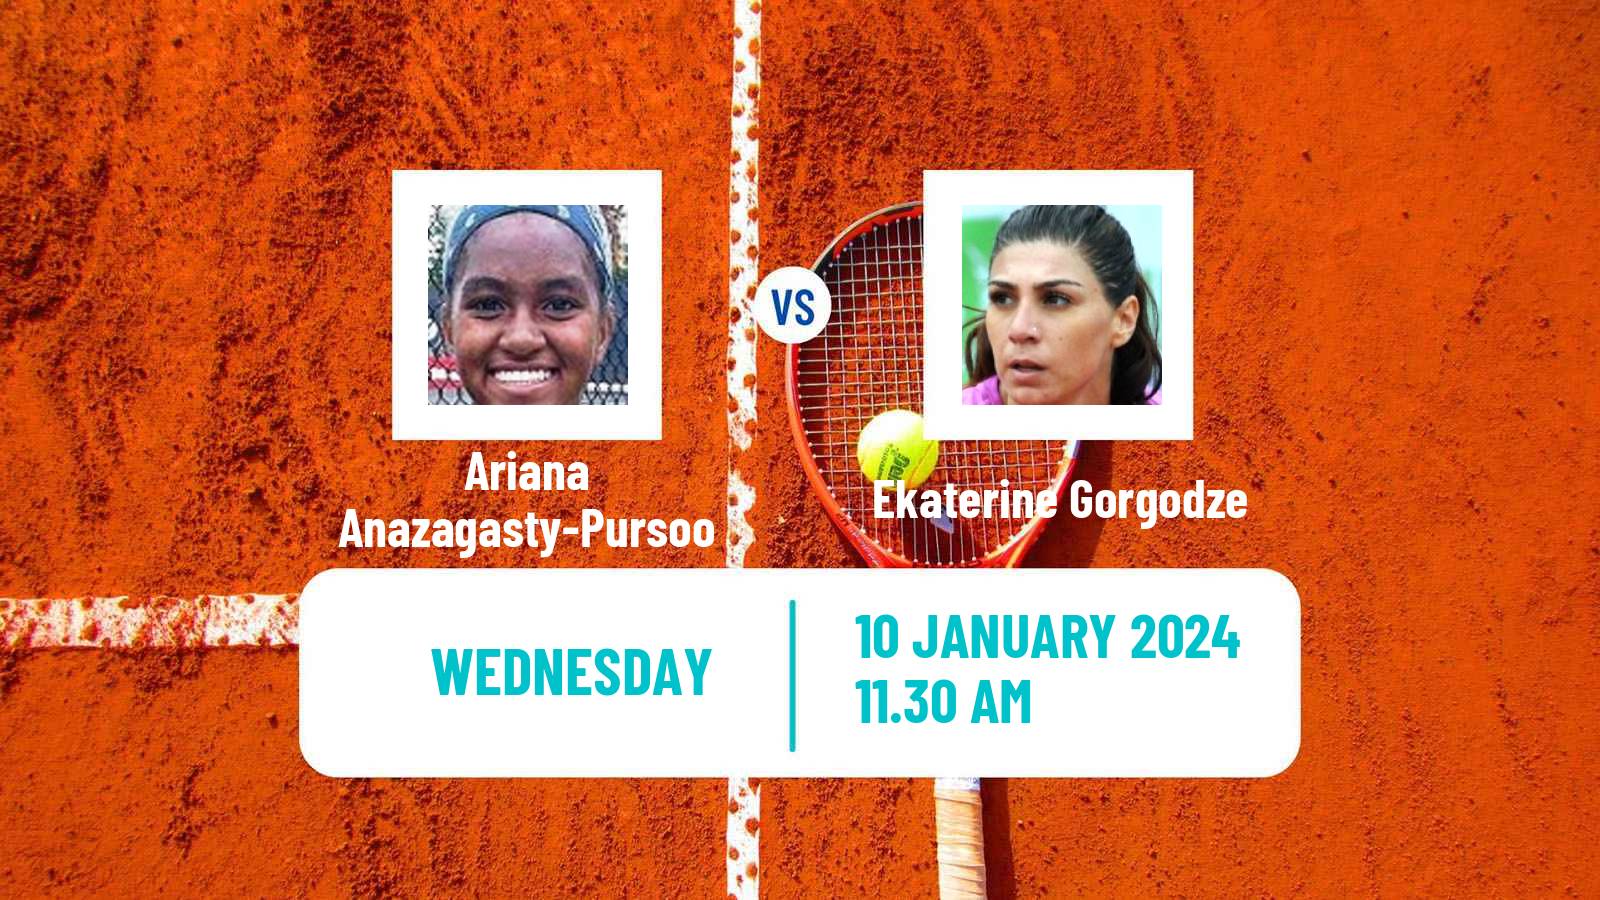 Tennis ITF W35 Naples Fl Women Ariana Anazagasty-Pursoo - Ekaterine Gorgodze